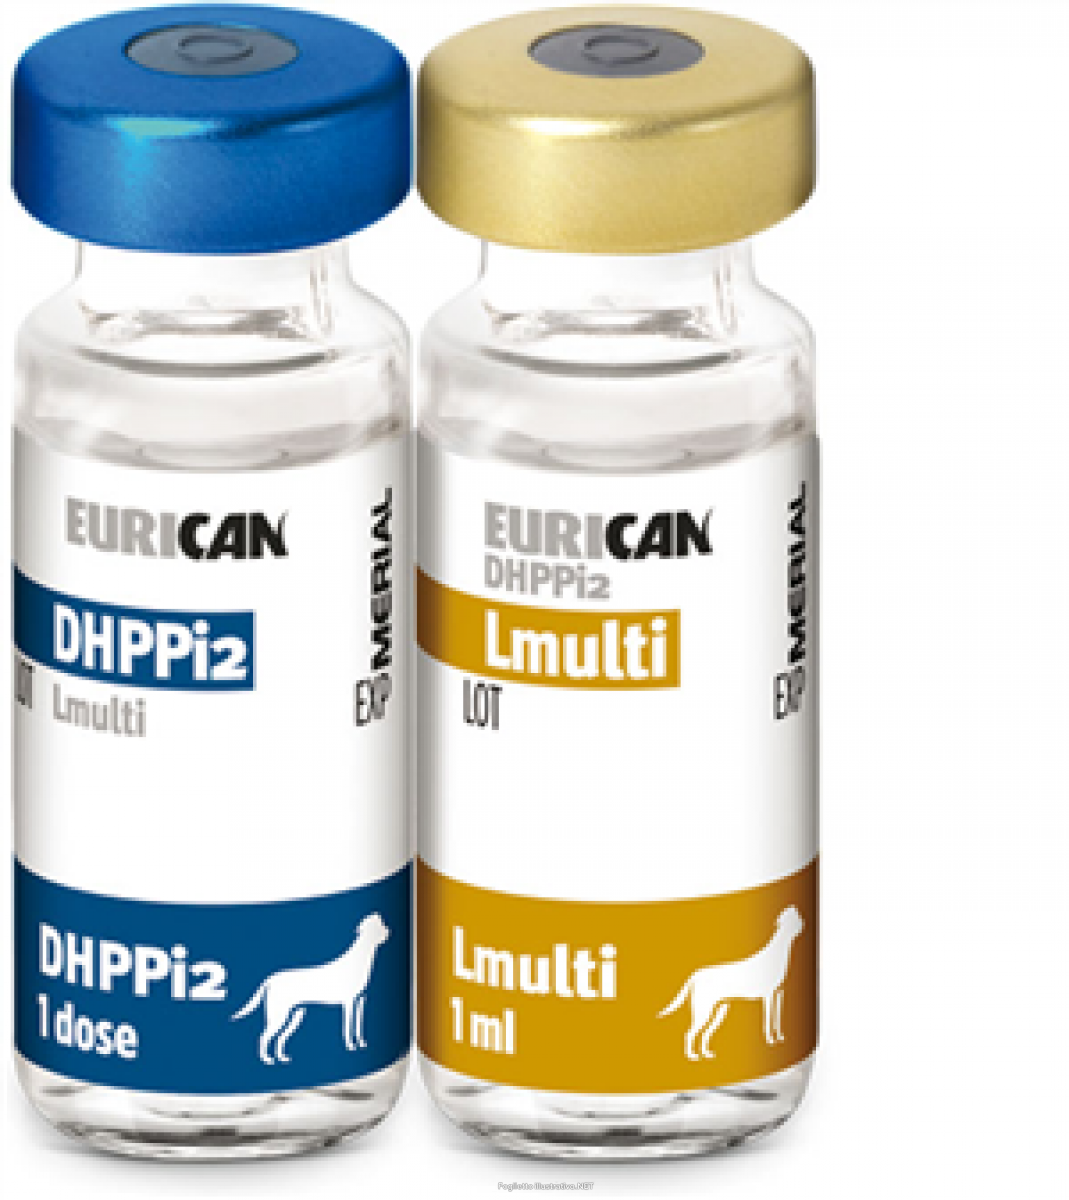 Вакцина для собак l. Эурикан dhppi2 вакцина для собак. Эурикан LR И dhppi2. Эурикан DHPPI+L для собак. Вакцина Merial Эурикан.